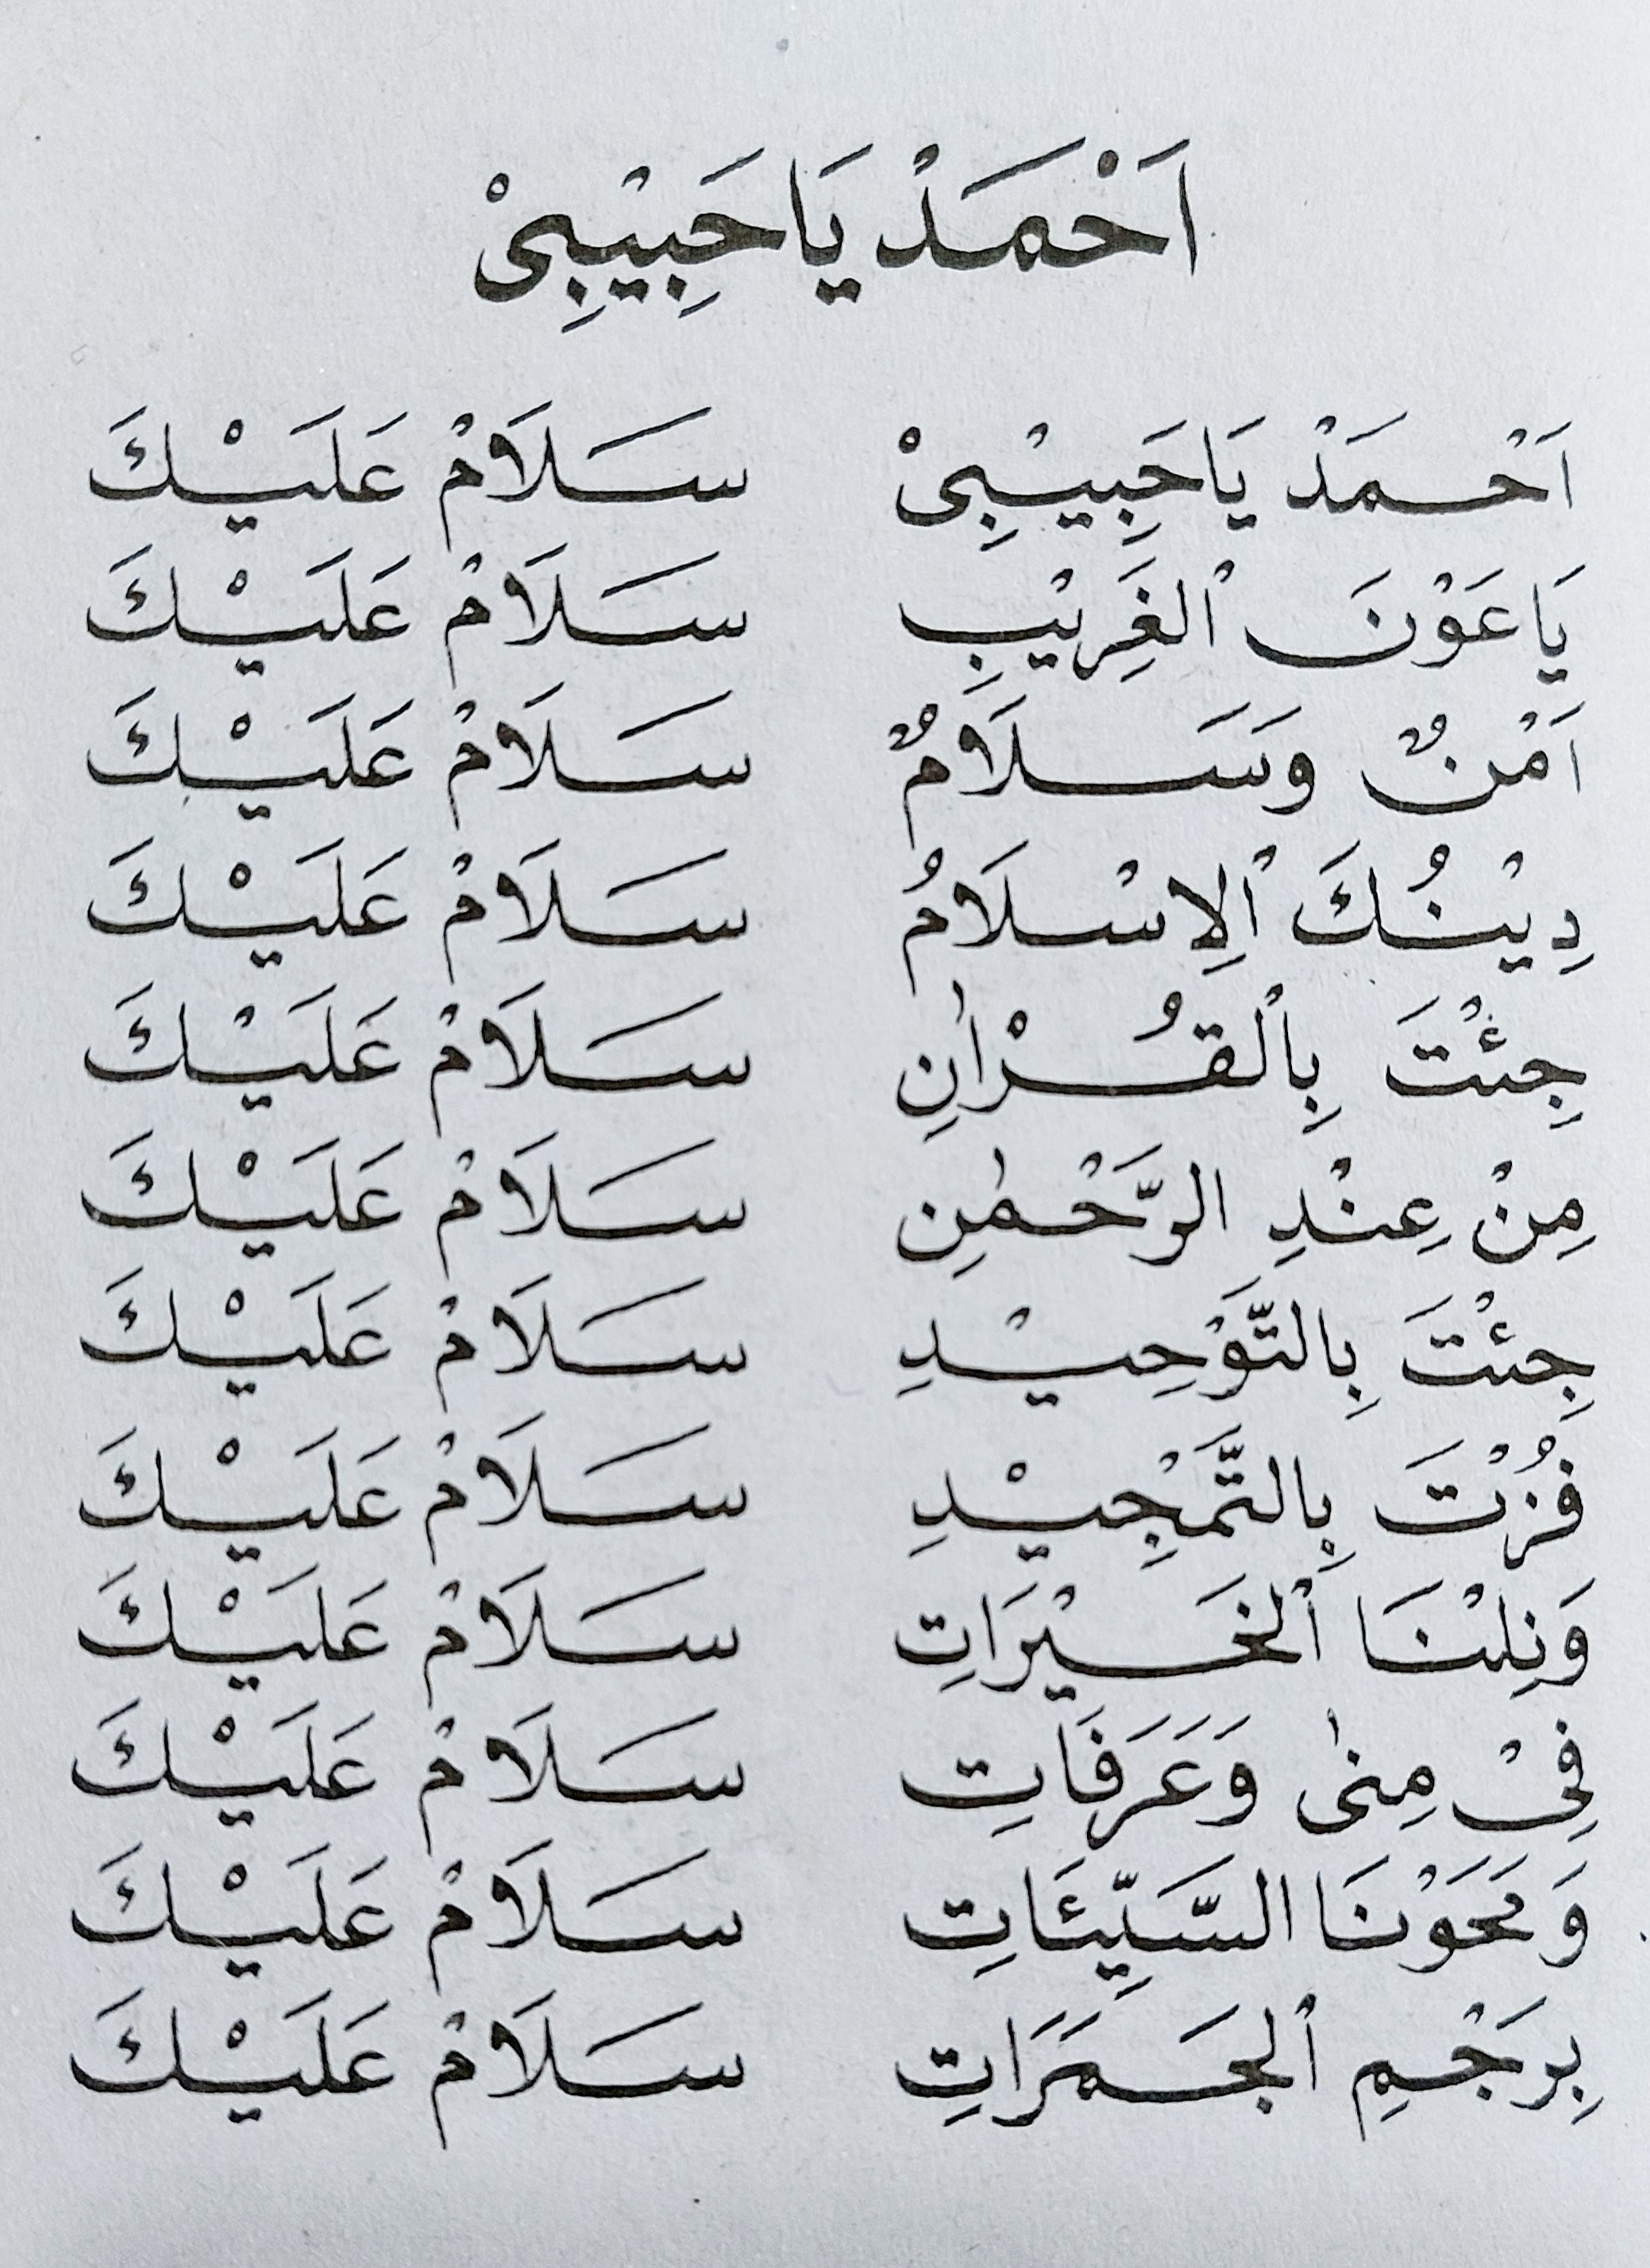 Ya nabi salam alaika lirik arab lengkap pdf